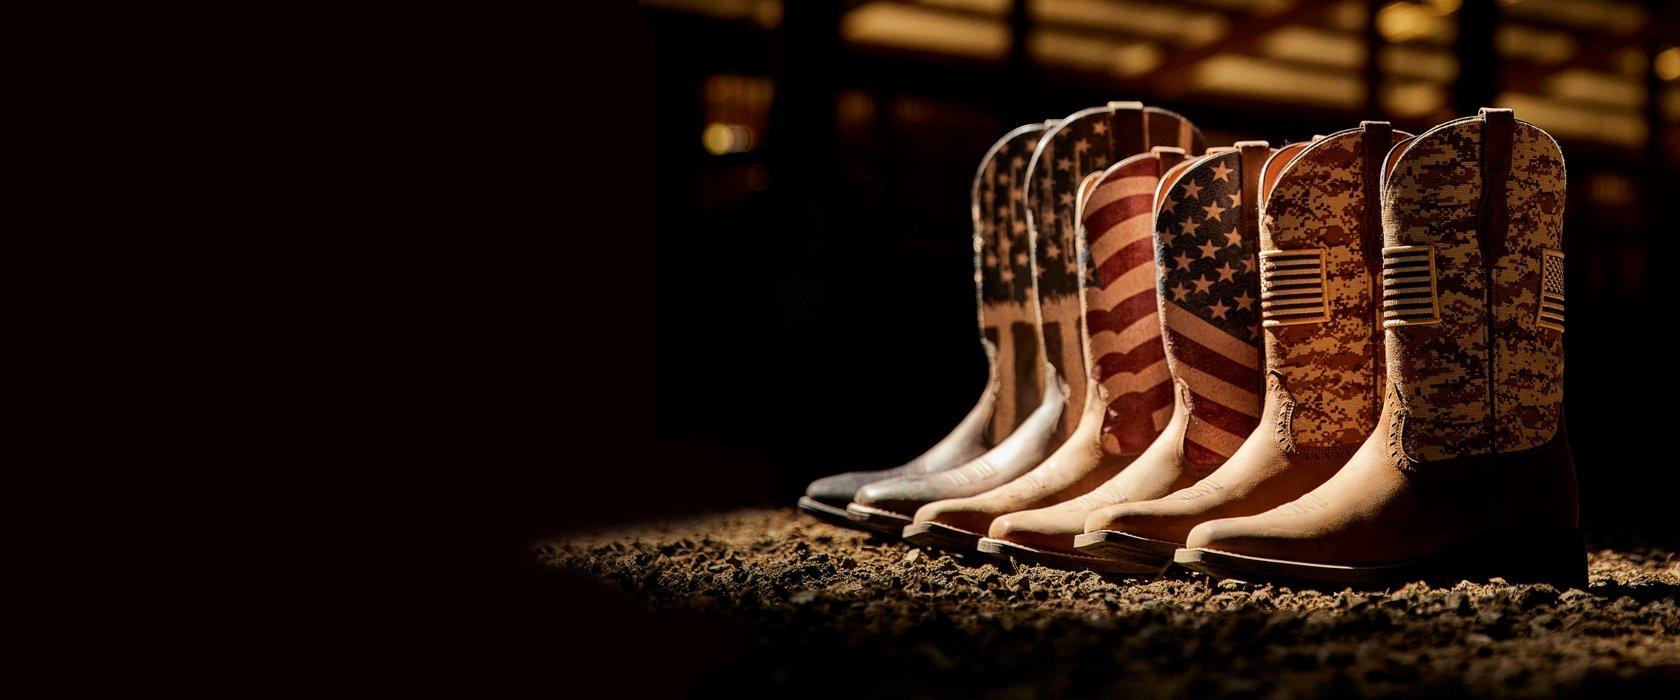 Patriotic Ariat boots